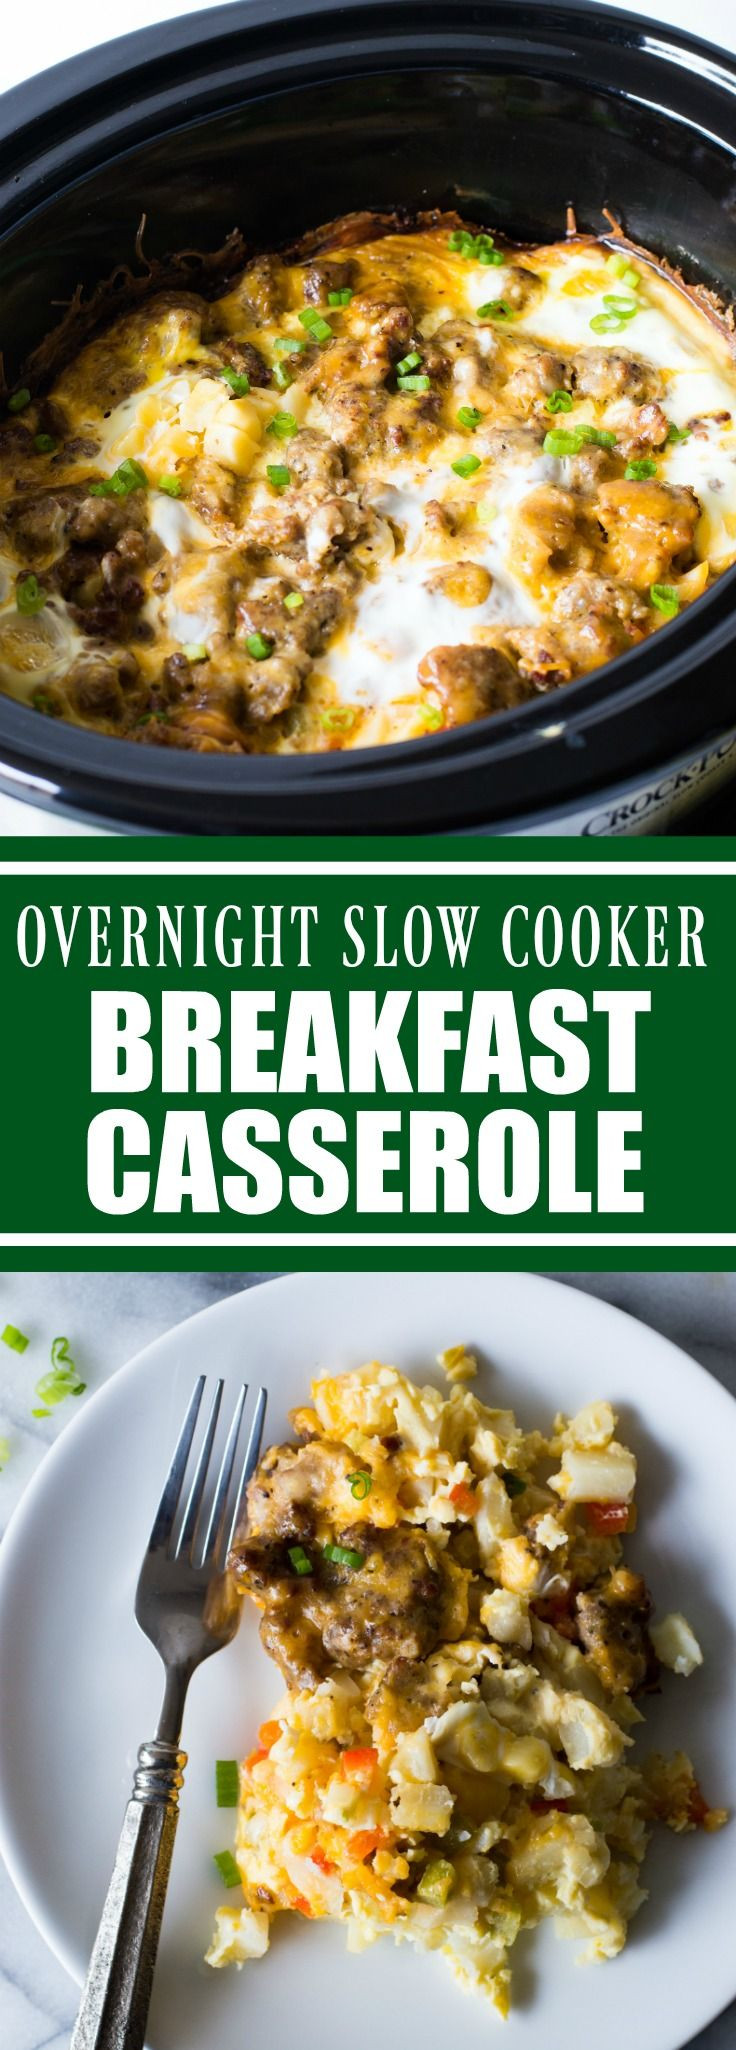 Slow Cooker Breakfast Casserole Recipes
 Slow Cooker Overnight Breakfast Casserole Recipe